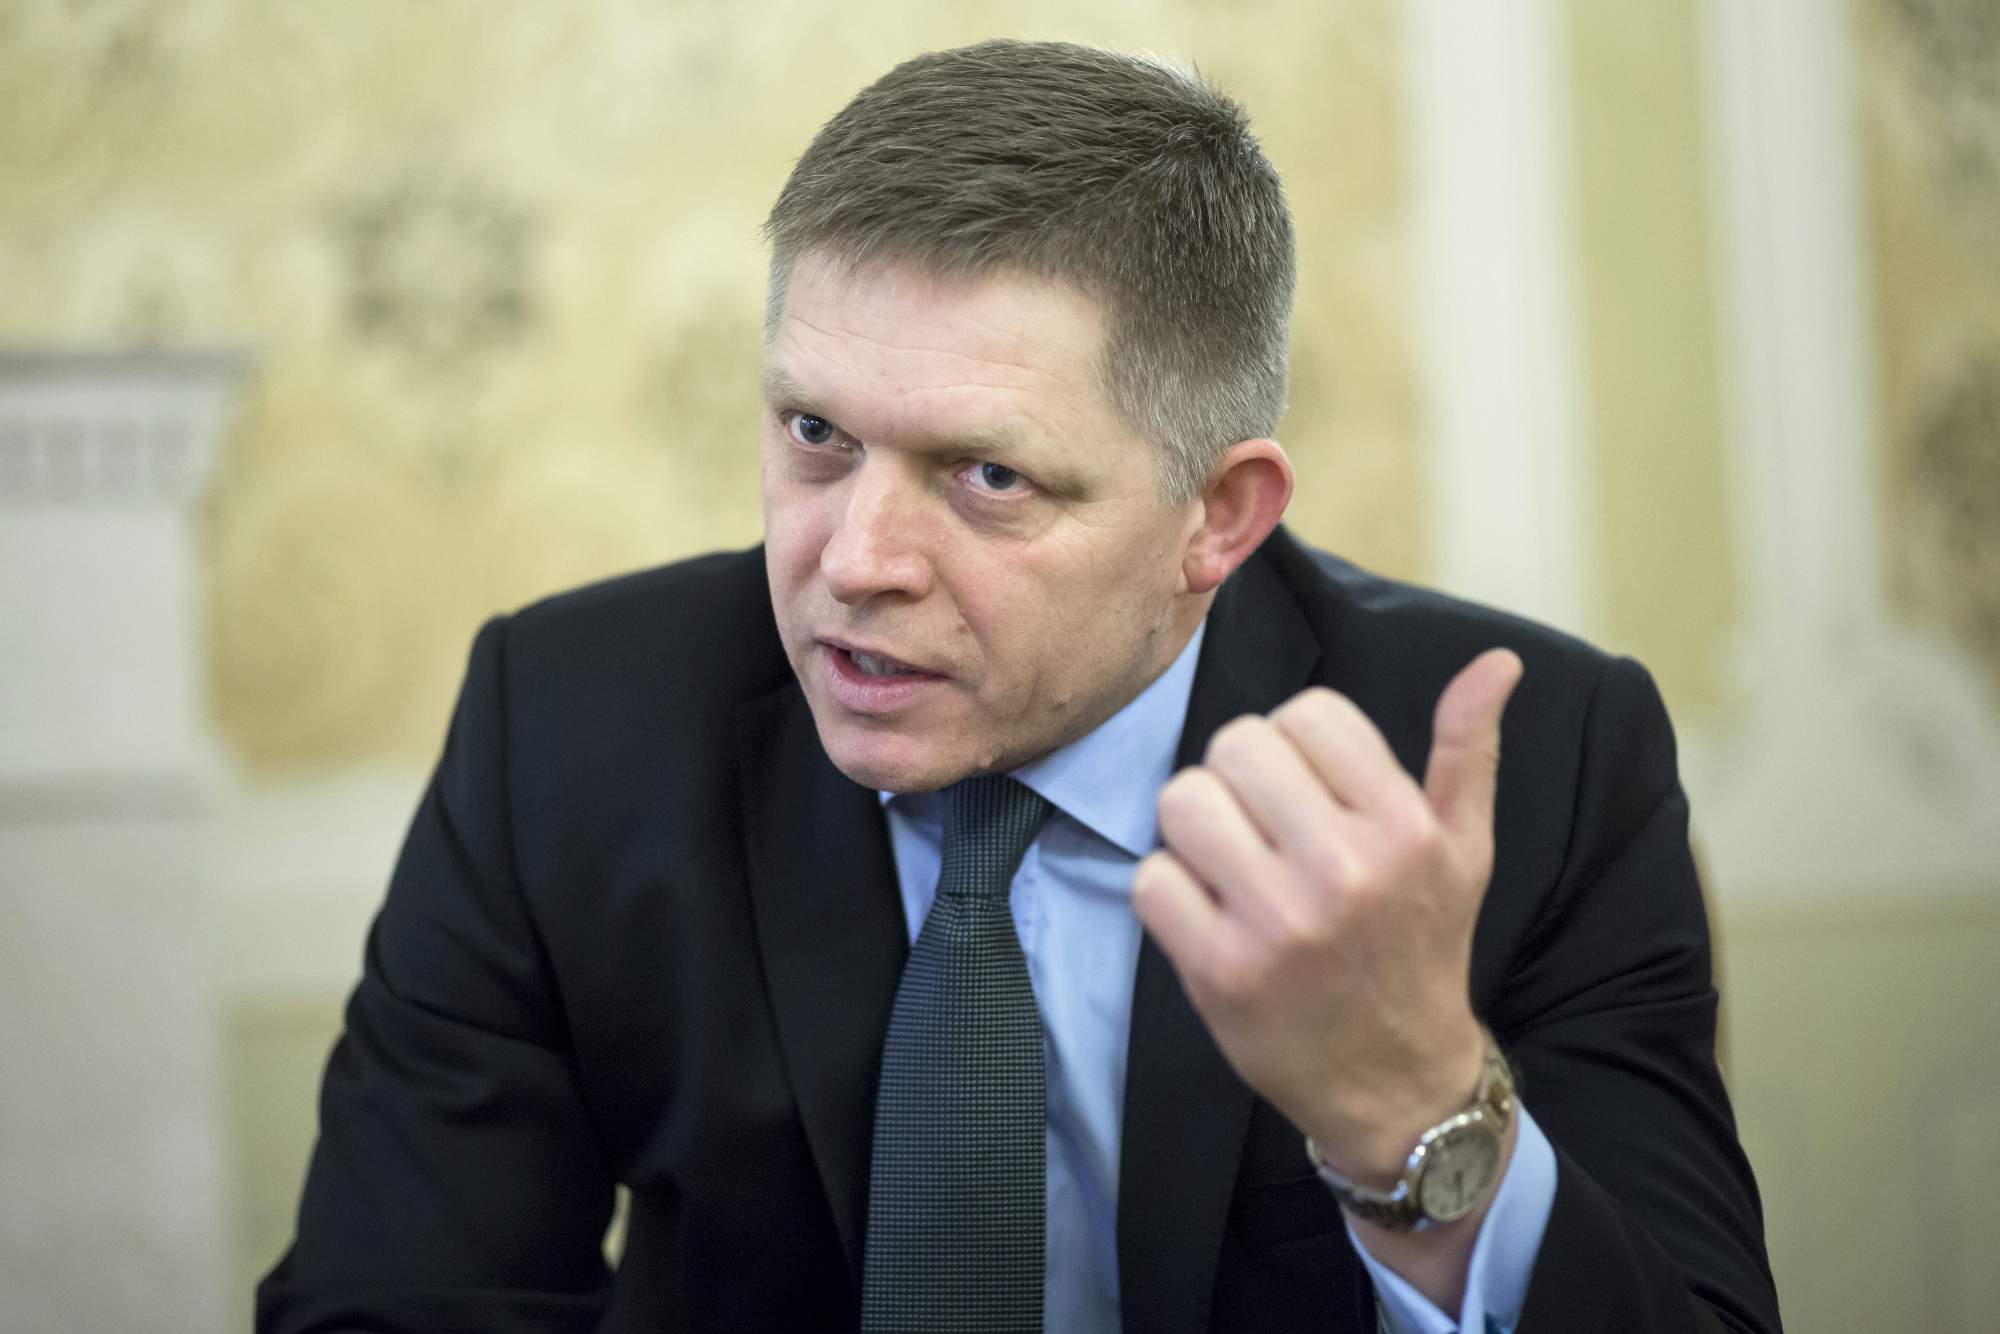 Почему новый премьер Словакии ненавидит Украину